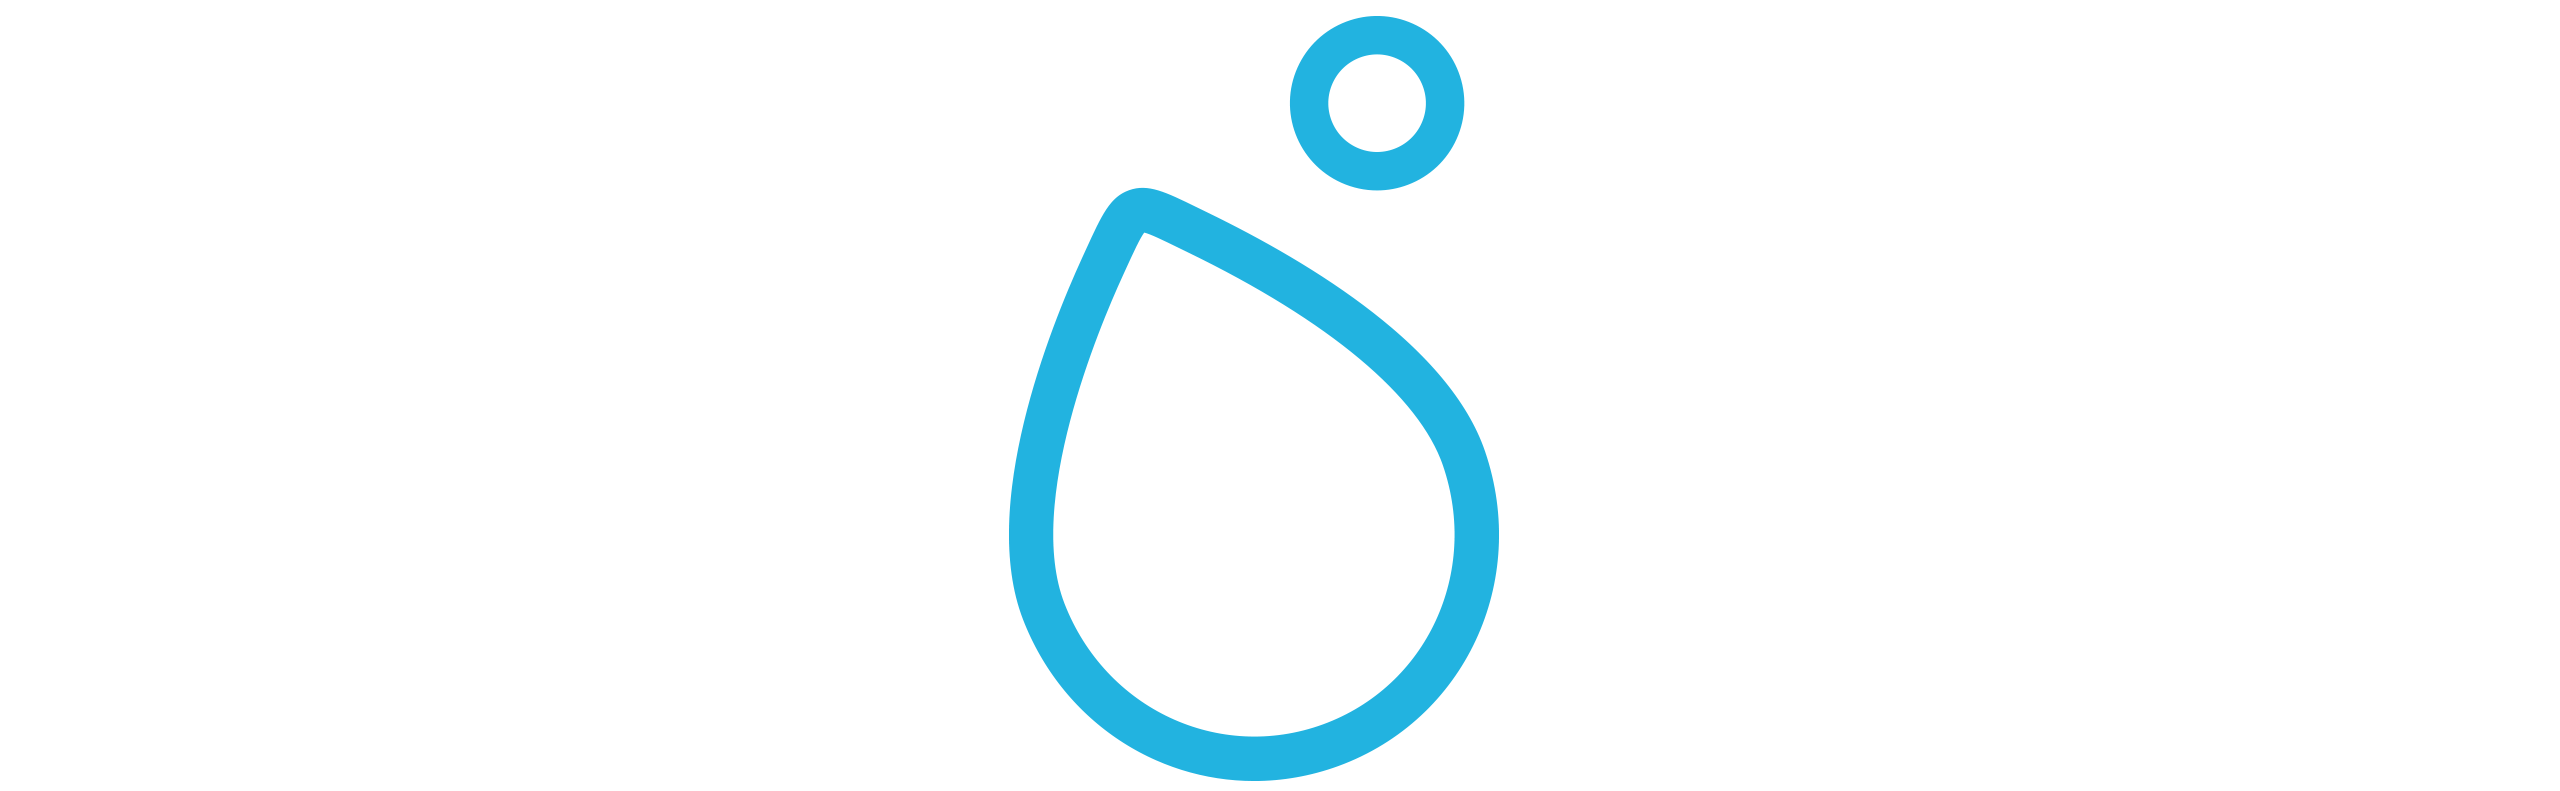 Tropfen als Basis-Design für Logo Forum Mineralwasser